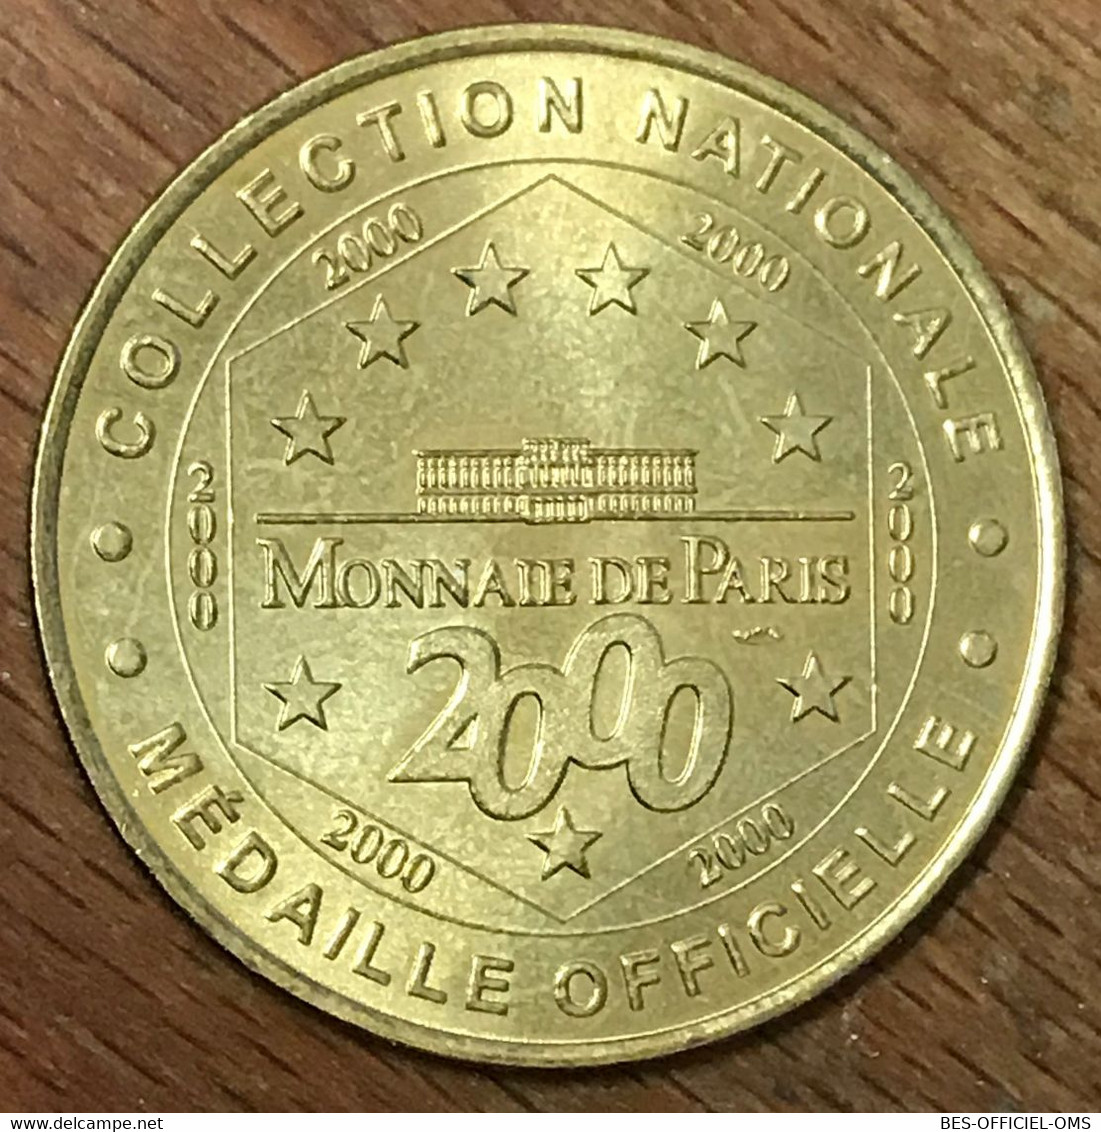 37 LA FORTERESSE MÉDIÉVALE CHINON MDP 2000 MEDAILLE SOUVENIR MONNAIE DE PARIS JETON TOURISTIQUE MEDALS COINS TOKENS - 2000